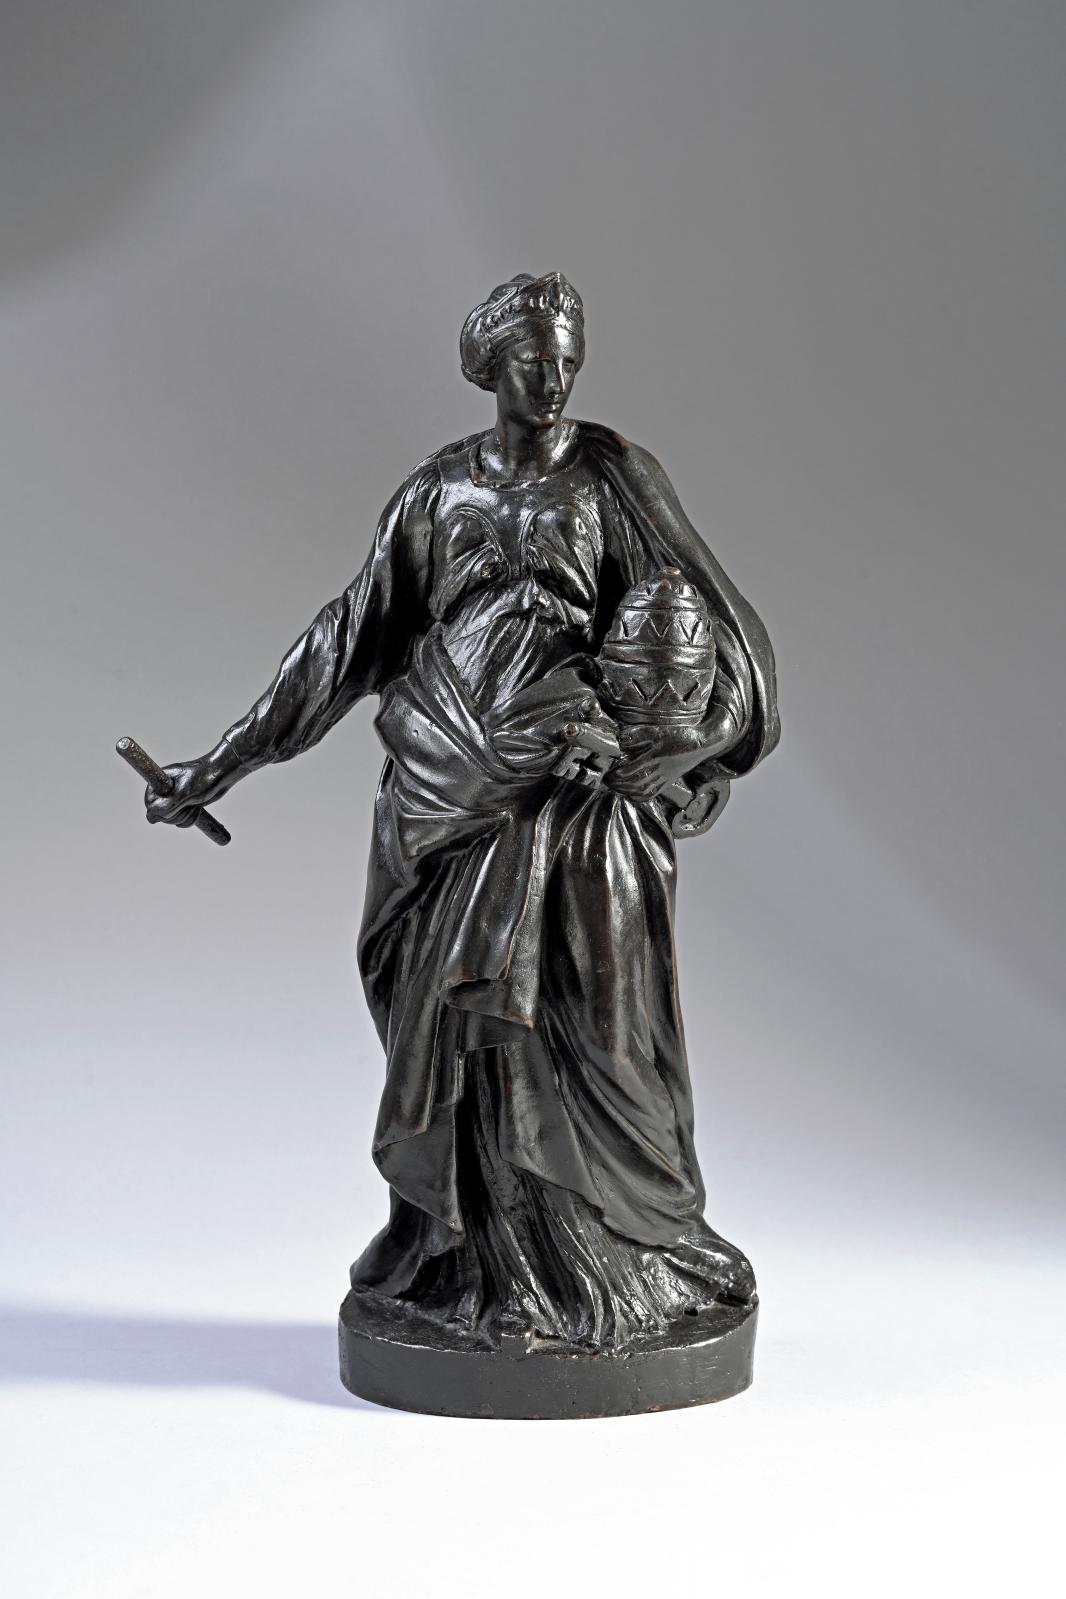 Un rarissime bronze du Bernin pour le pape Urbain VIII